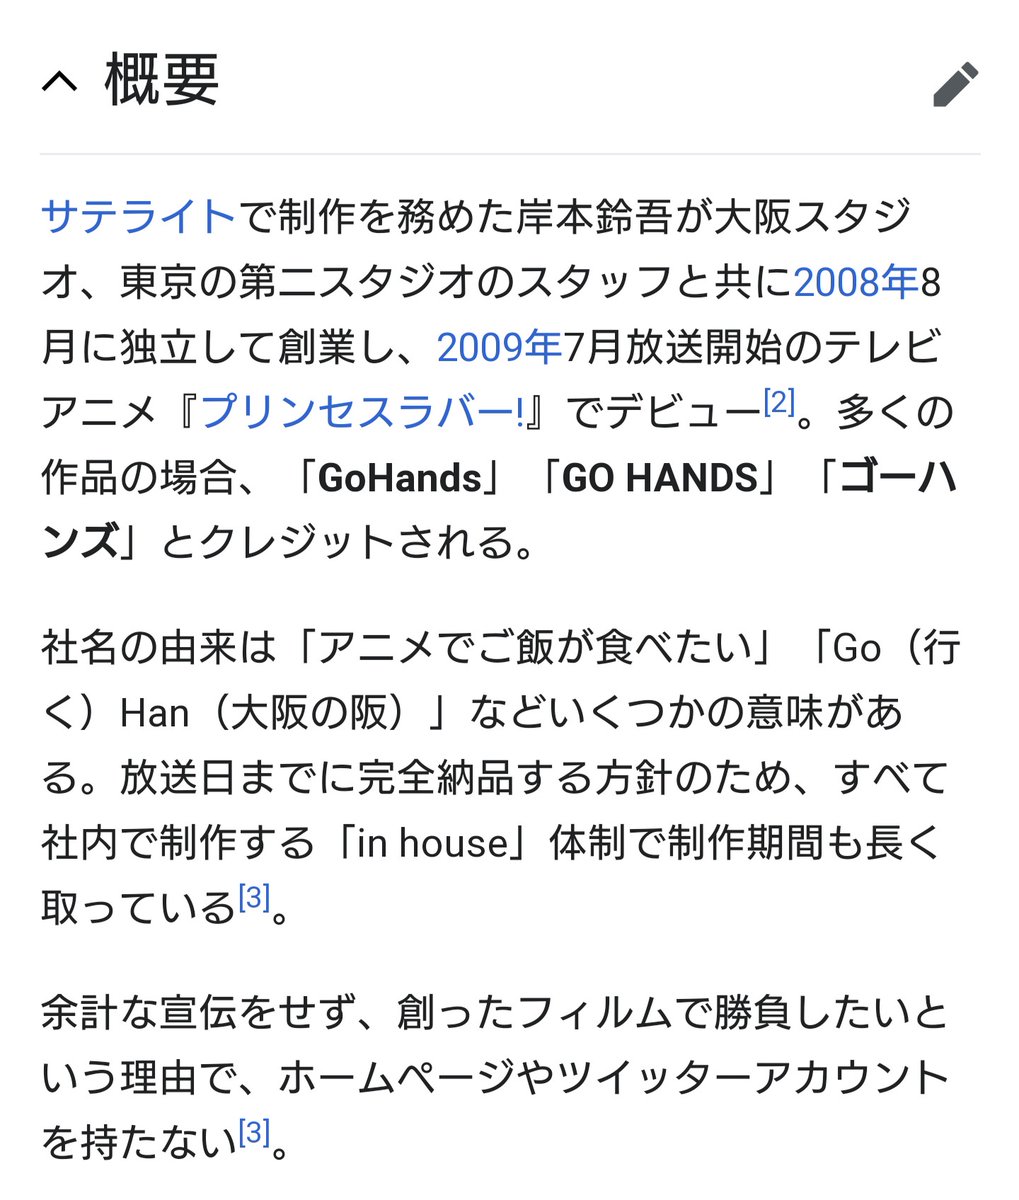 騎士竜斗 Wikipediaで調べたら Gohandsはサテライトの大阪スタジオが分離独立する形で設立されたアニメ制作会社 だったんですね そのこともあって 本社は大阪市にある